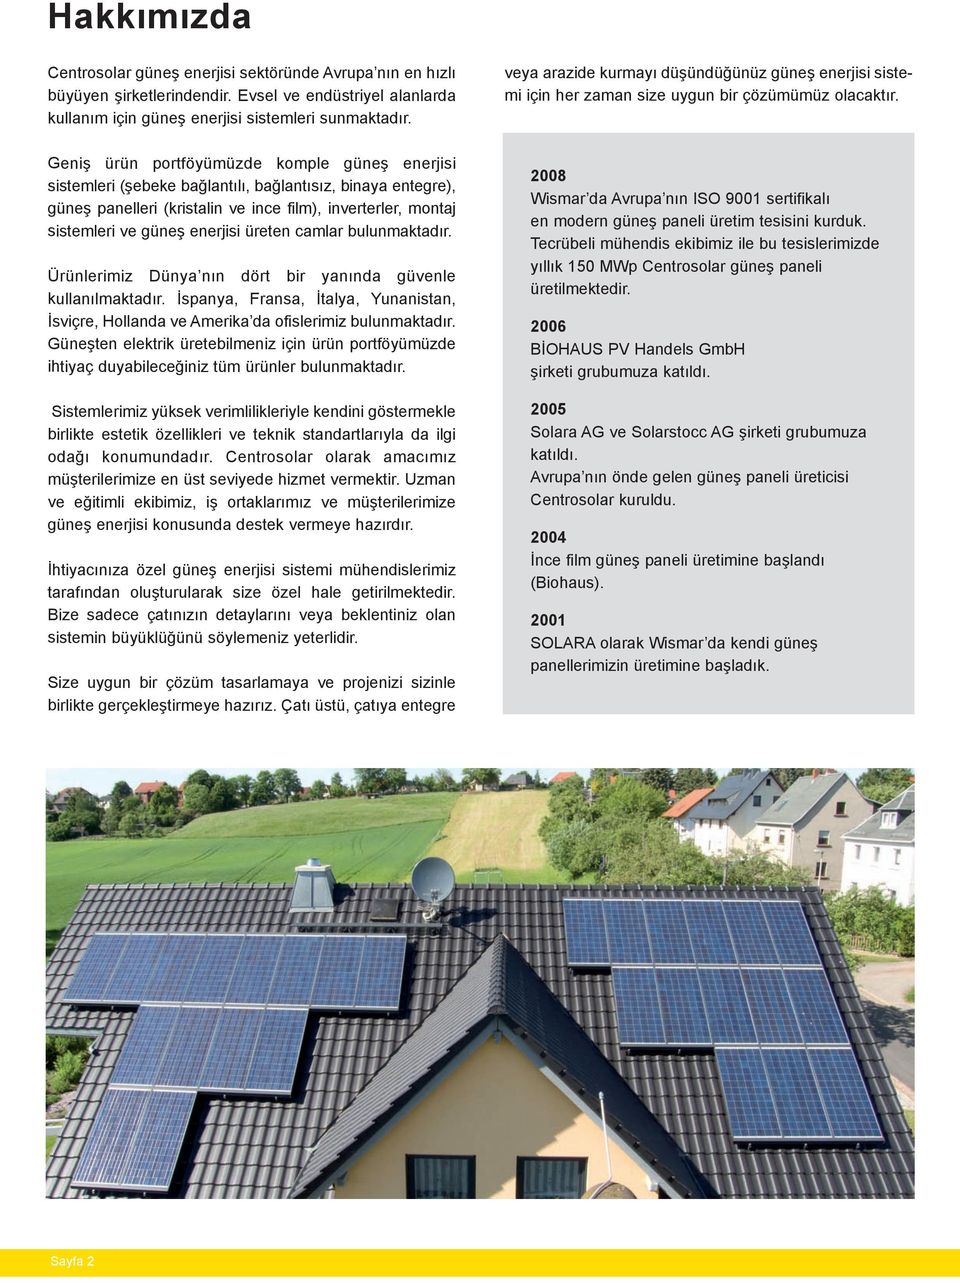 Geniş ürün portföyümüzde komple güneş enerjisi sistemleri (şebeke bağlantılı, bağlantısız, binaya entegre), güneş panelleri (kristalin ve ince film), inverterler, montaj sistemleri ve güneş enerjisi